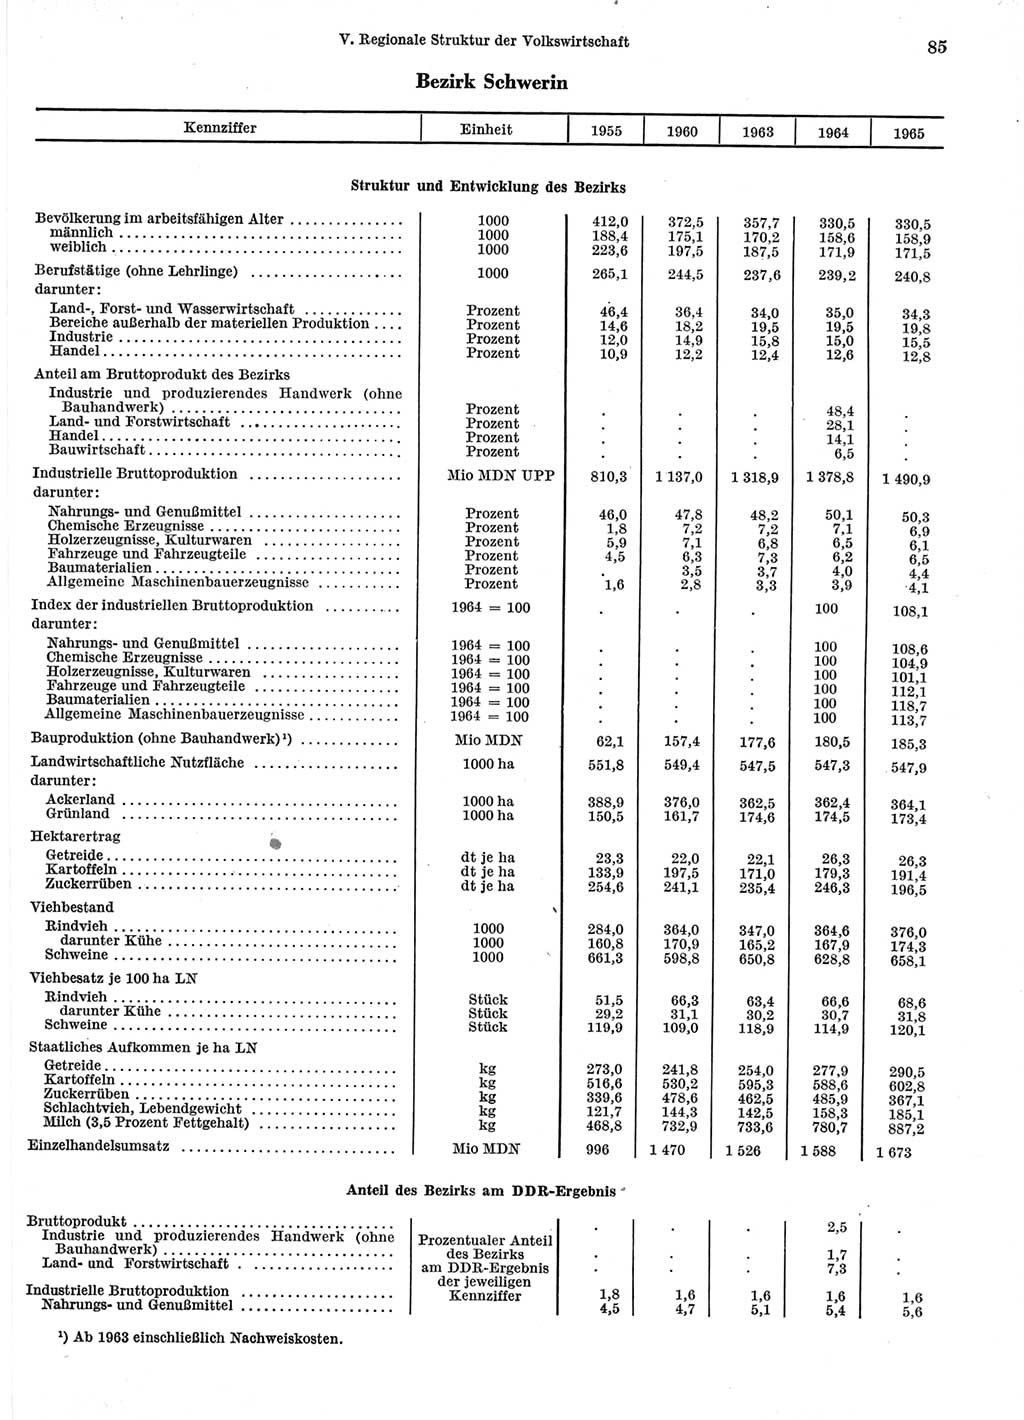 Statistisches Jahrbuch der Deutschen Demokratischen Republik (DDR) 1966, Seite 85 (Stat. Jb. DDR 1966, S. 85)